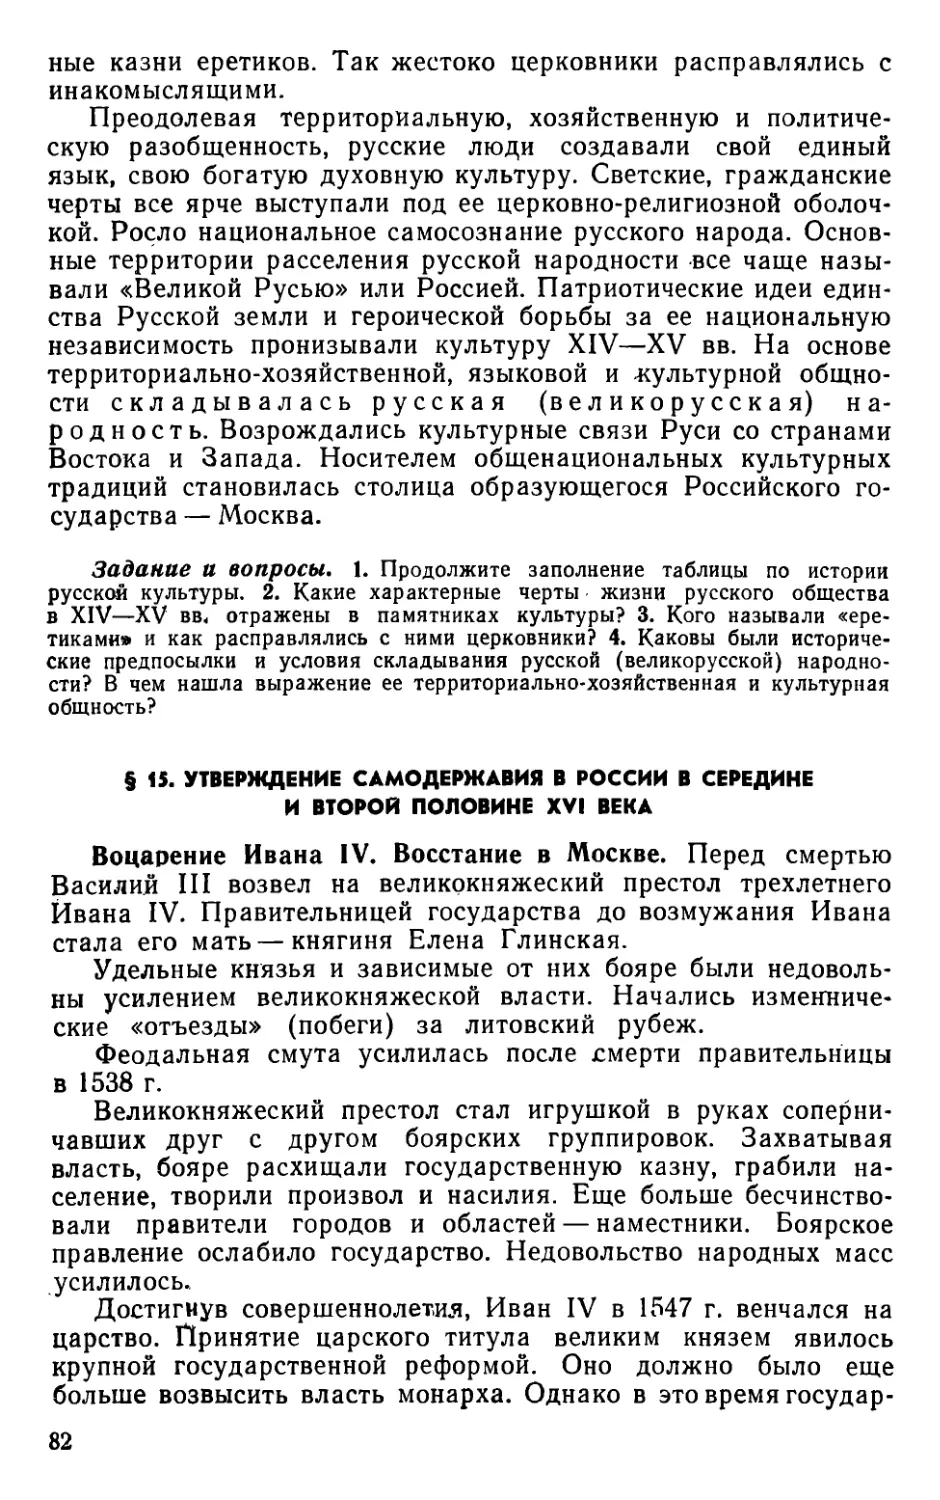 § 15. Утверждение самодержавия в России в середине и второй половине XVI века